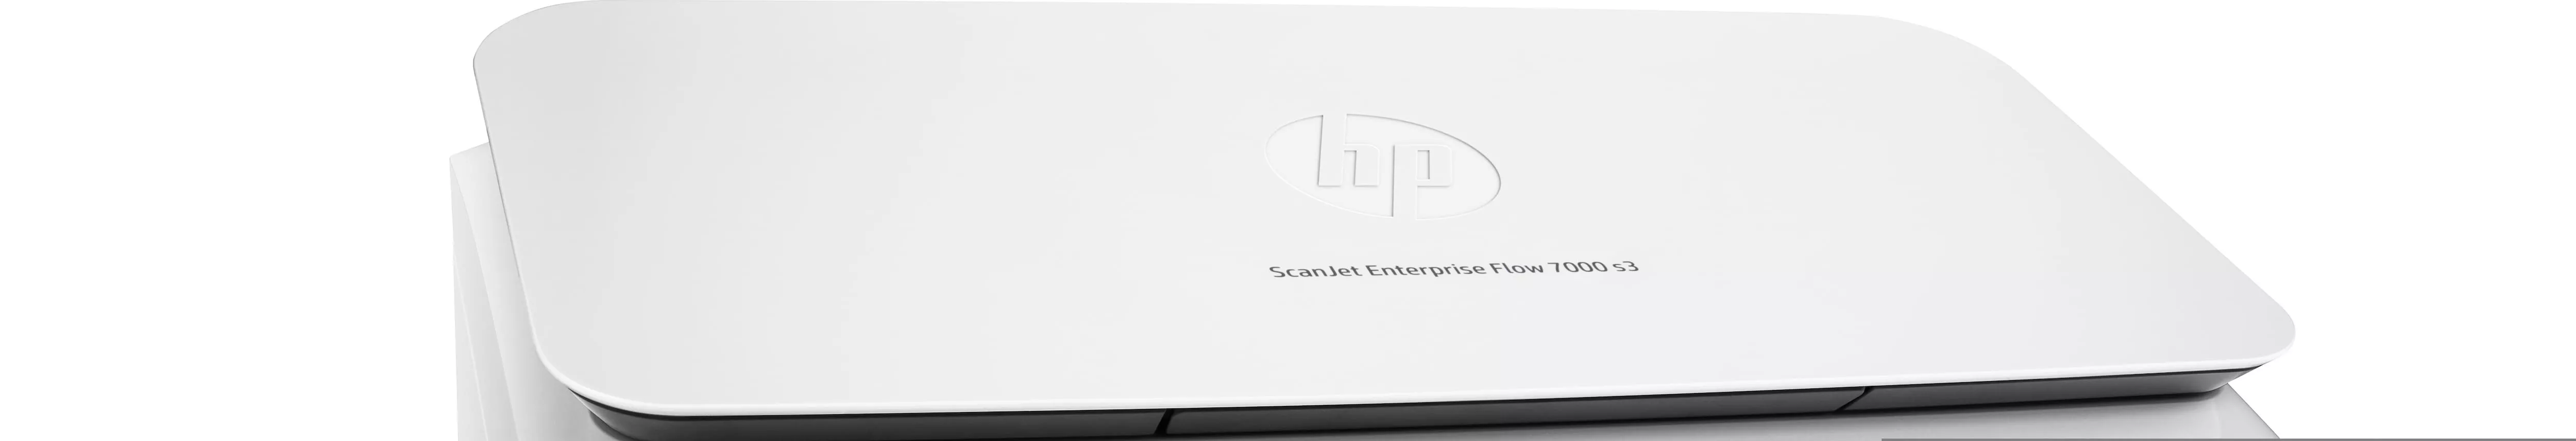 Vente HP ScanJet Enterprise Flow 7000 s3 HP au meilleur prix - visuel 4